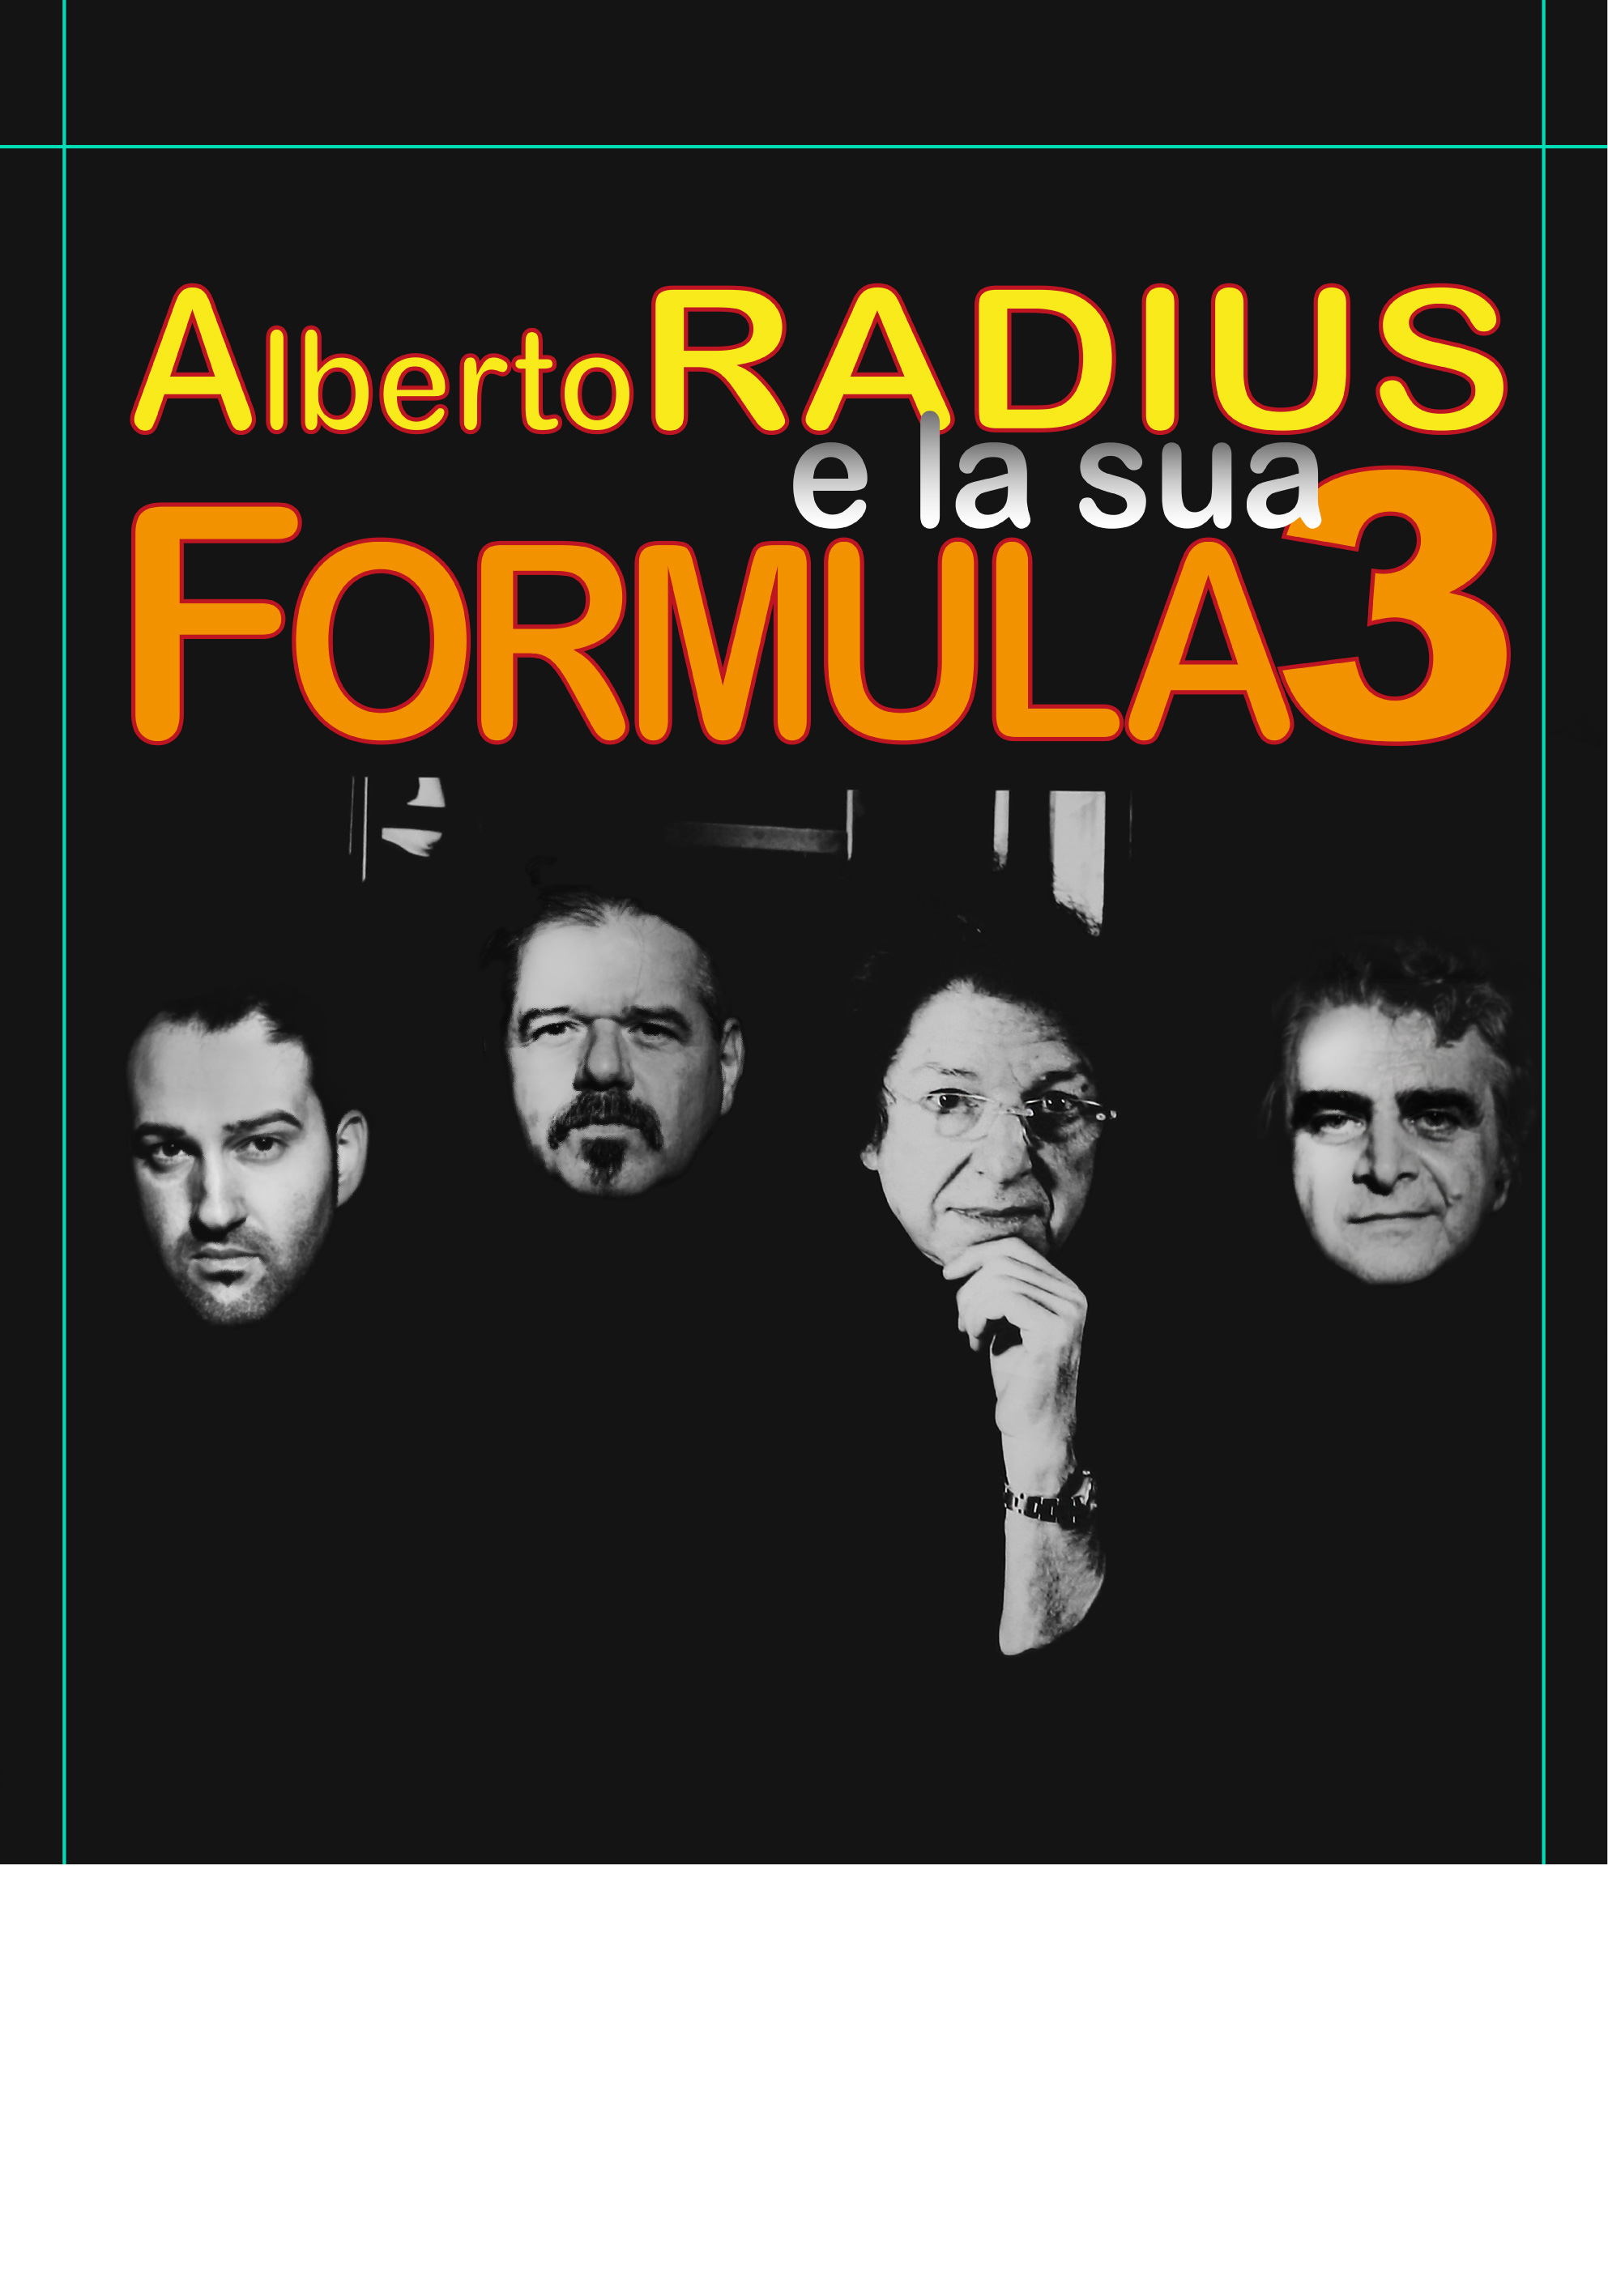 Foto Alberto Radius Formula 3